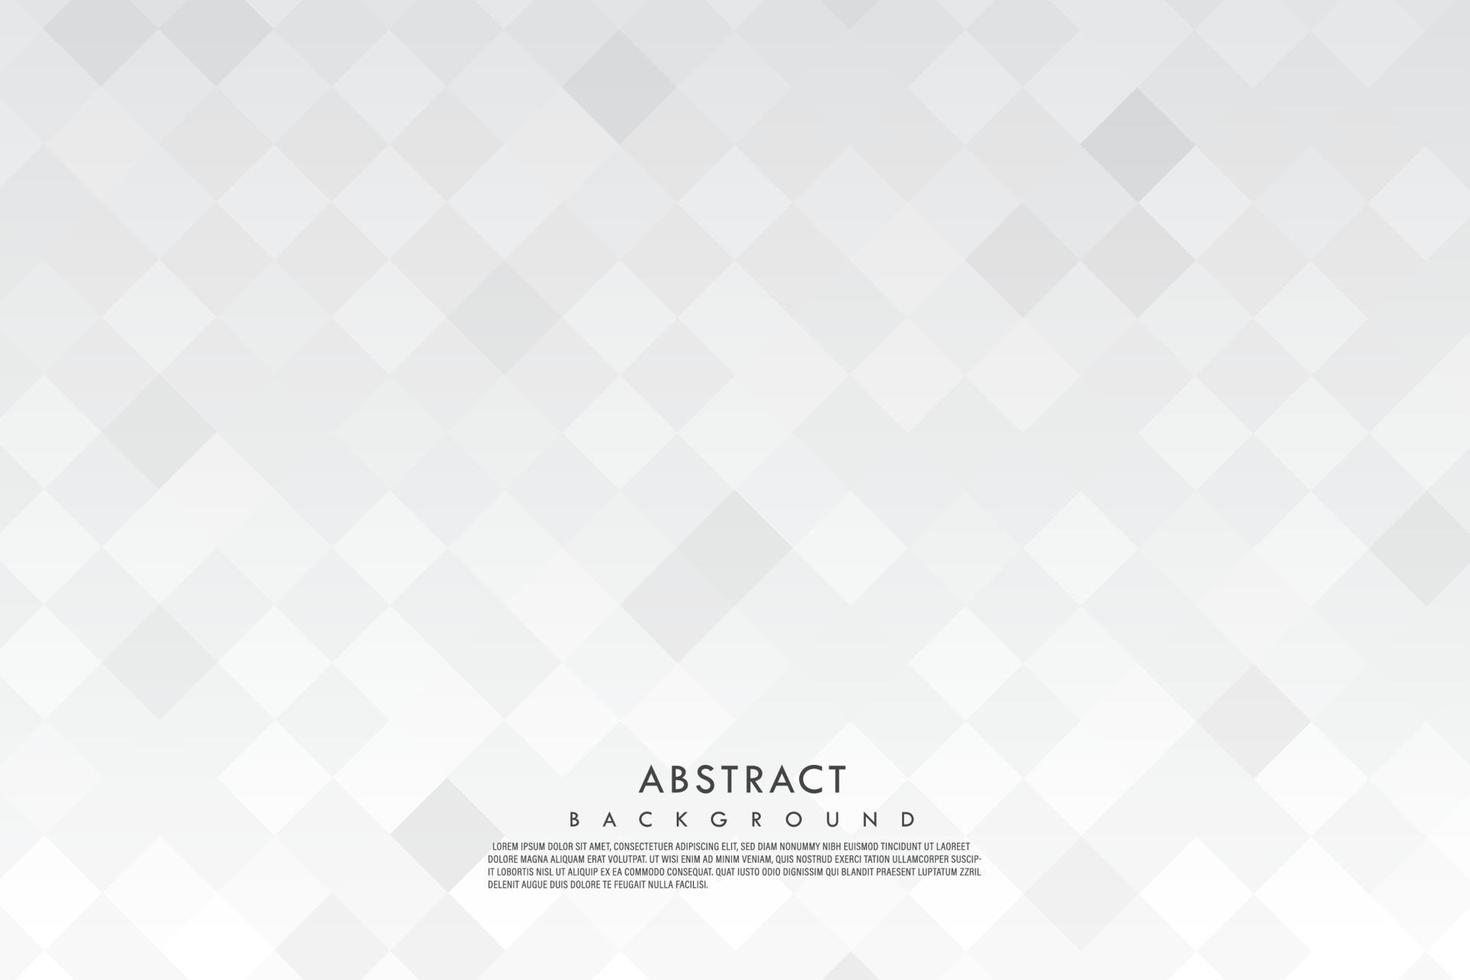 Vektor quadratischer grauer und weißer Farbverlauf abstrakter Hintergrund. Banner-Design